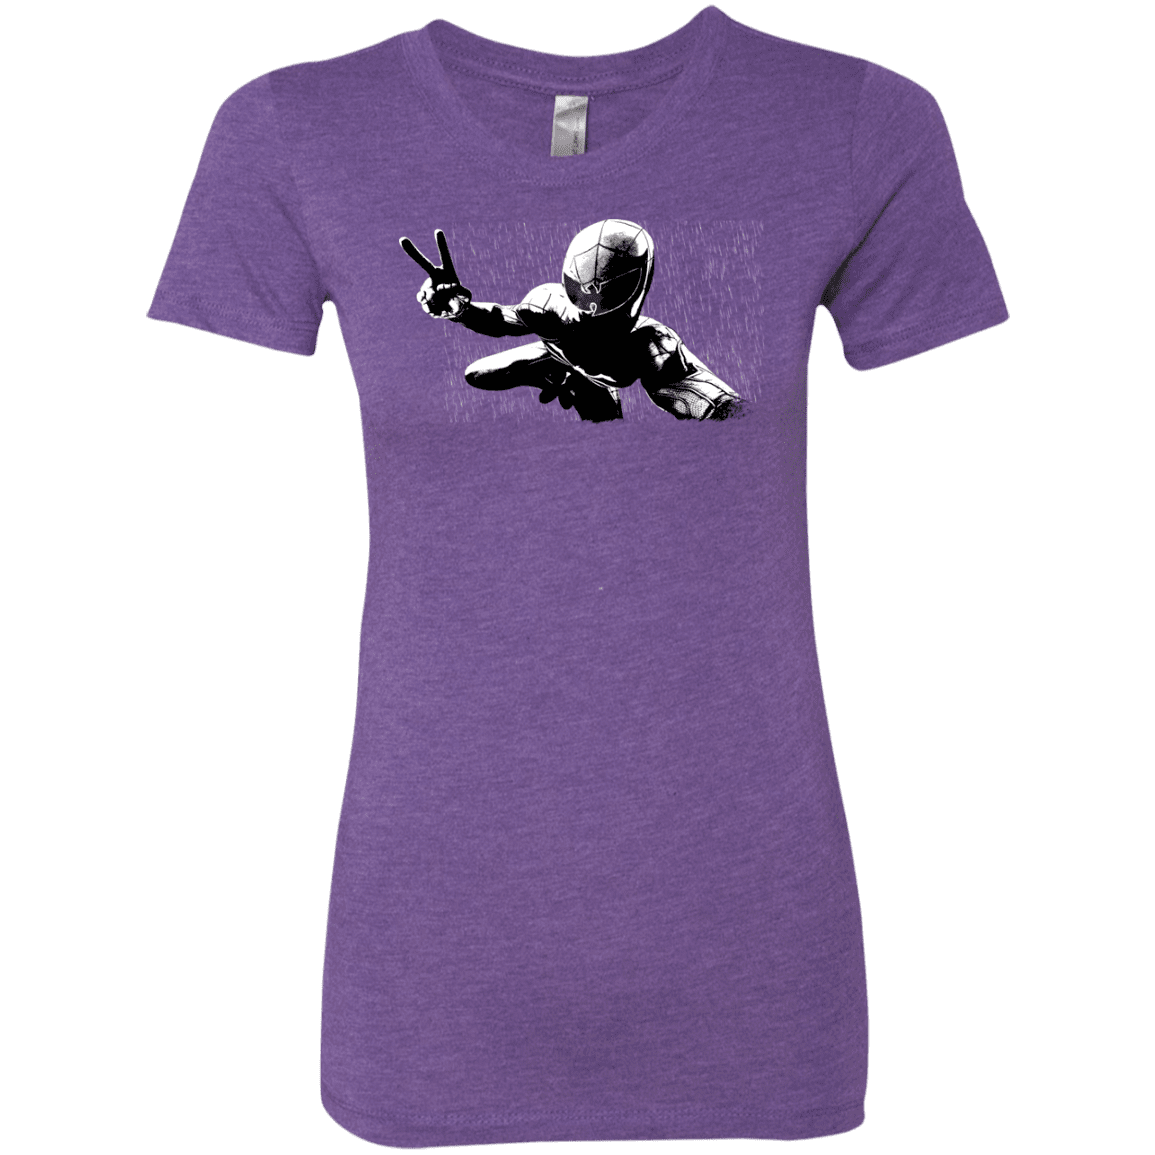 T-Shirts Purple Rush / S Its Yourz Women's Triblend T-Shirt